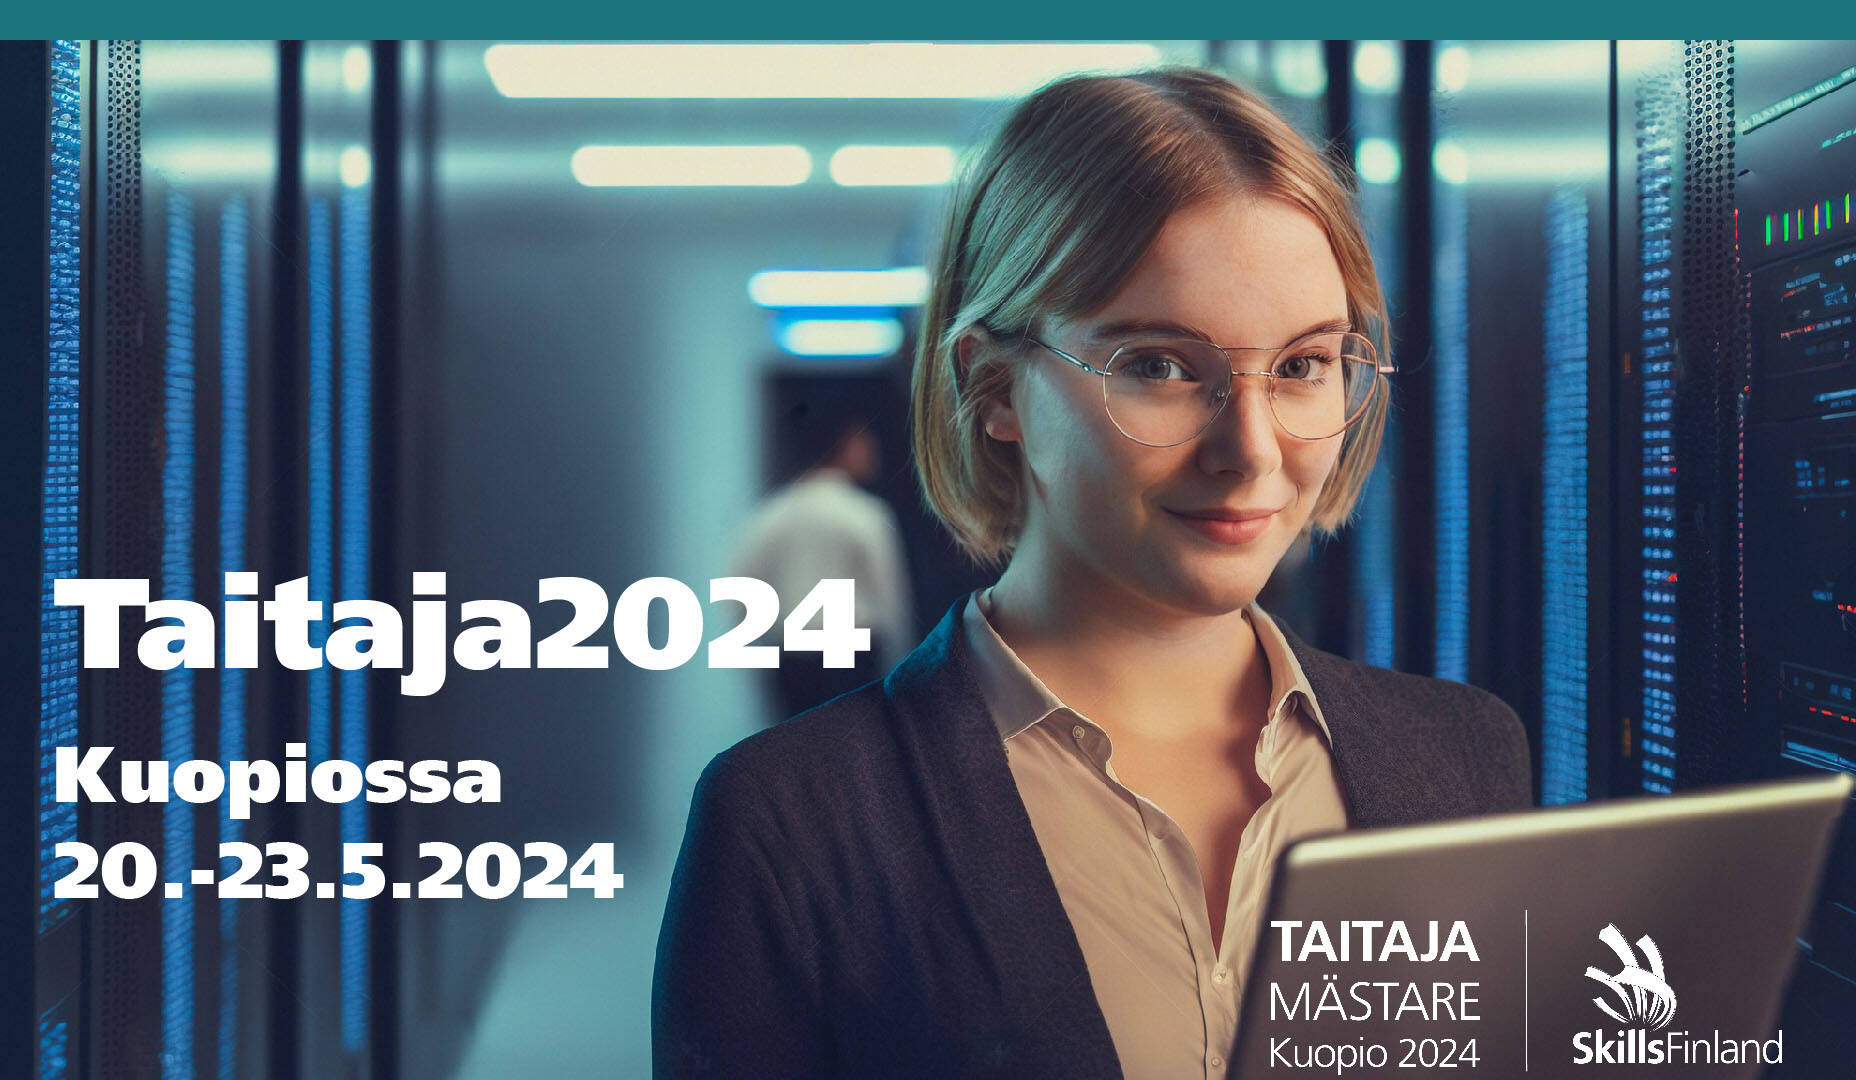 Kuopiossa 20.-23.5. järjestettävän Taitaja 2024 -kilpailun infonäyttökuva, jossa tyttö katsoo tietokoneen takaa kameraan.